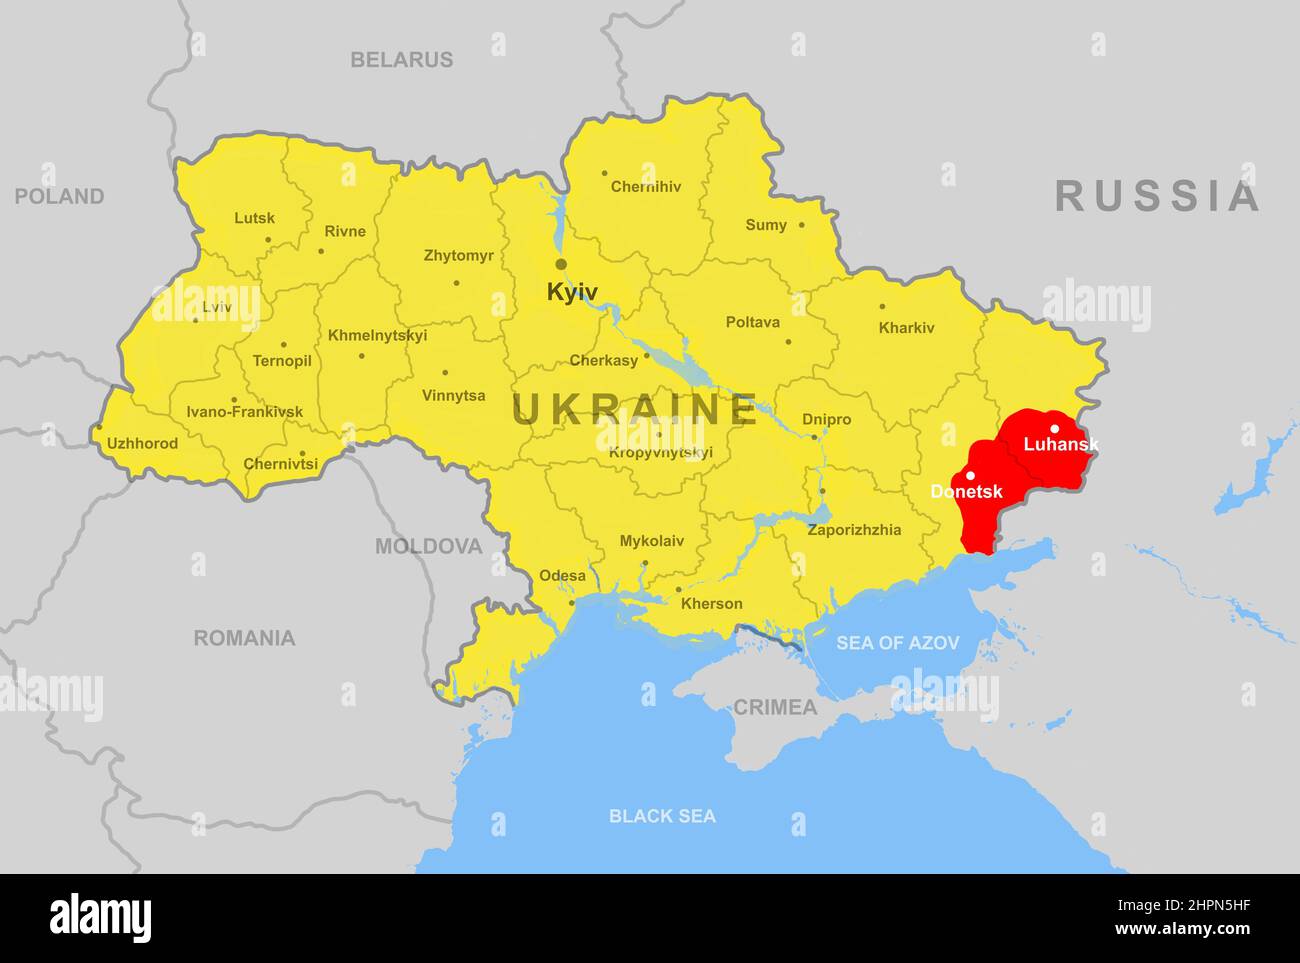 L'Ukraine sur la carte de l'Europe, les régions de Donetsk et de Luhansk (Donbass). Carte politique avec la frontière russe, la Crimée et la mer Noire. Concept d'Ukraine-Russi Banque D'Images